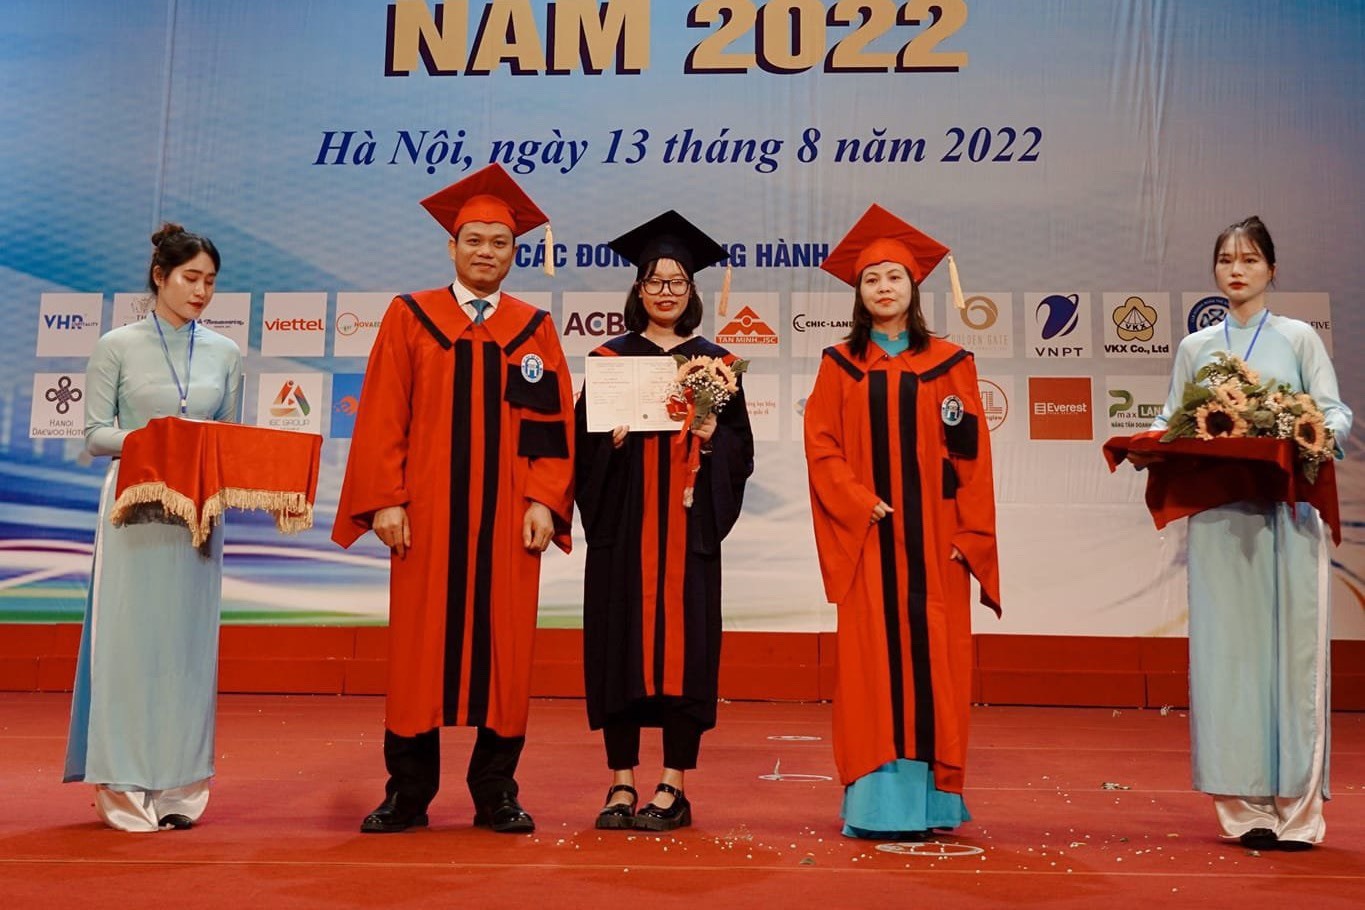 Chị Vũ Huyền Thảo Nguyên tân cử nhân Đại học Mở Hà Nội cho rằng tiền lương là quyền lợi cơ bản của người lao động. Ảnh NVCC